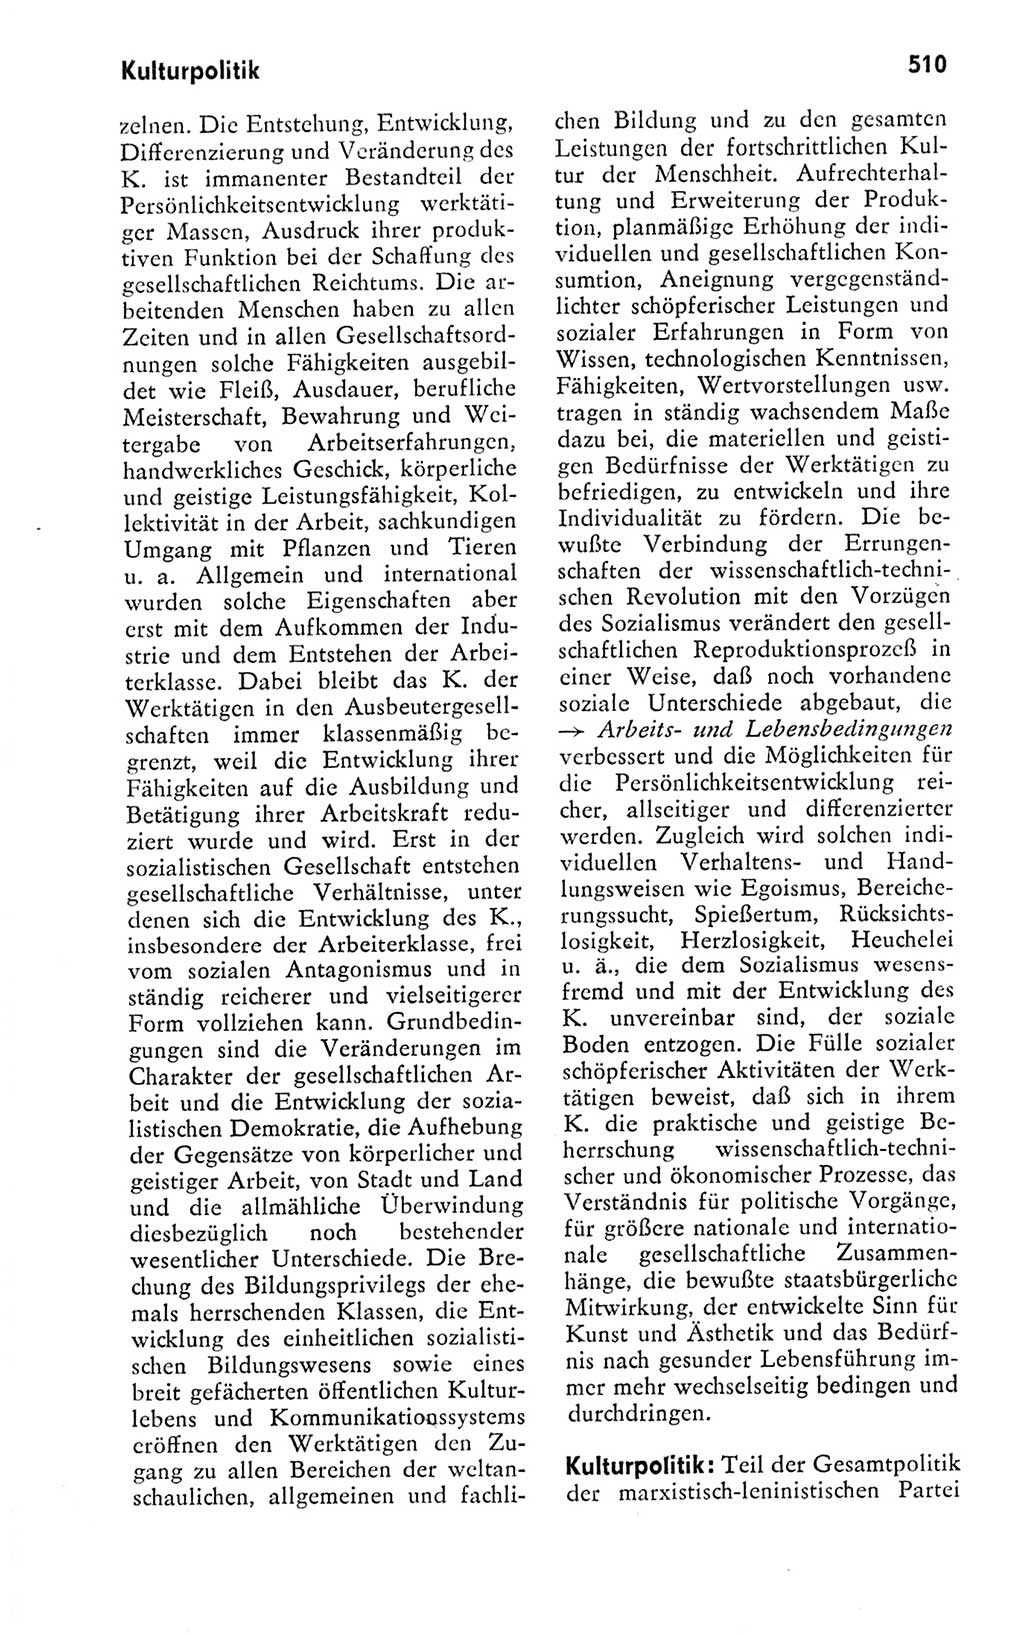 Kleines politisches Wörterbuch [Deutsche Demokratische Republik (DDR)] 1978, Seite 510 (Kl. pol. Wb. DDR 1978, S. 510)